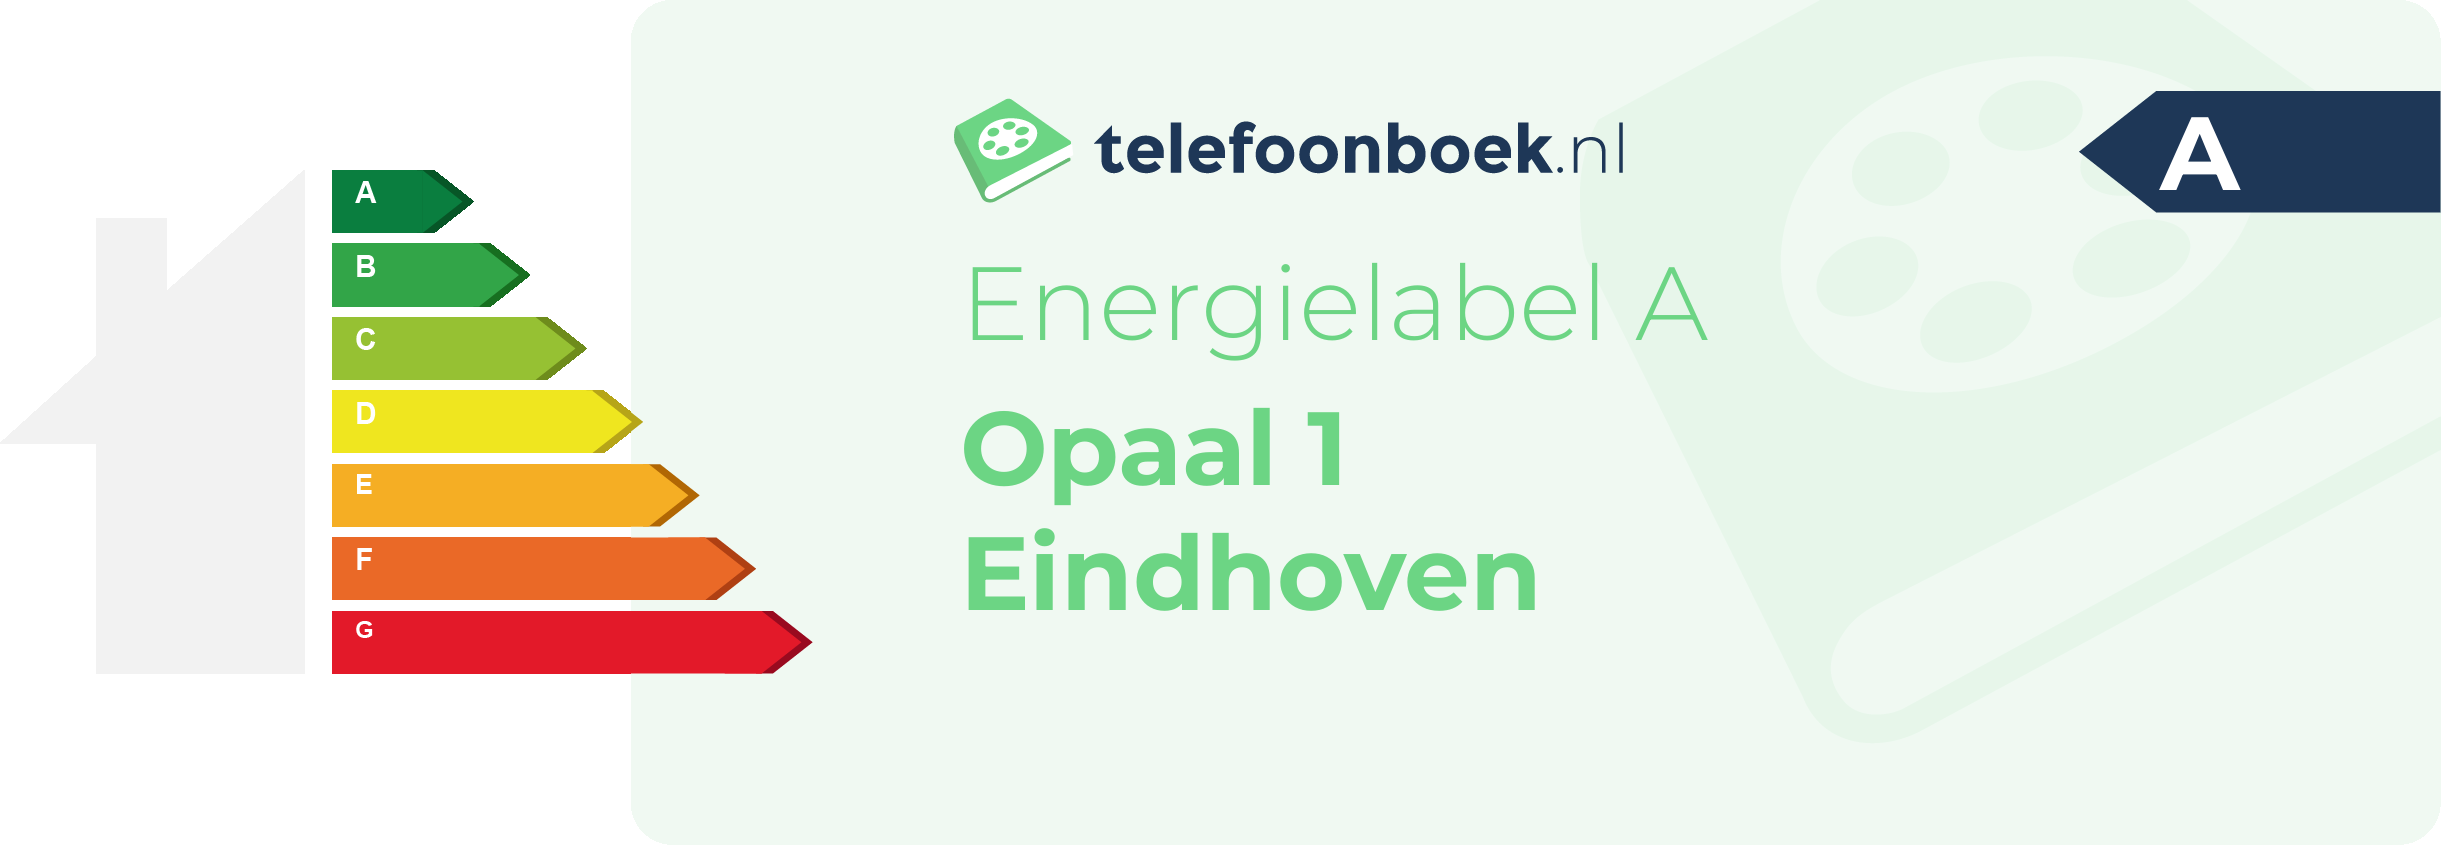 Energielabel Opaal 1 Eindhoven